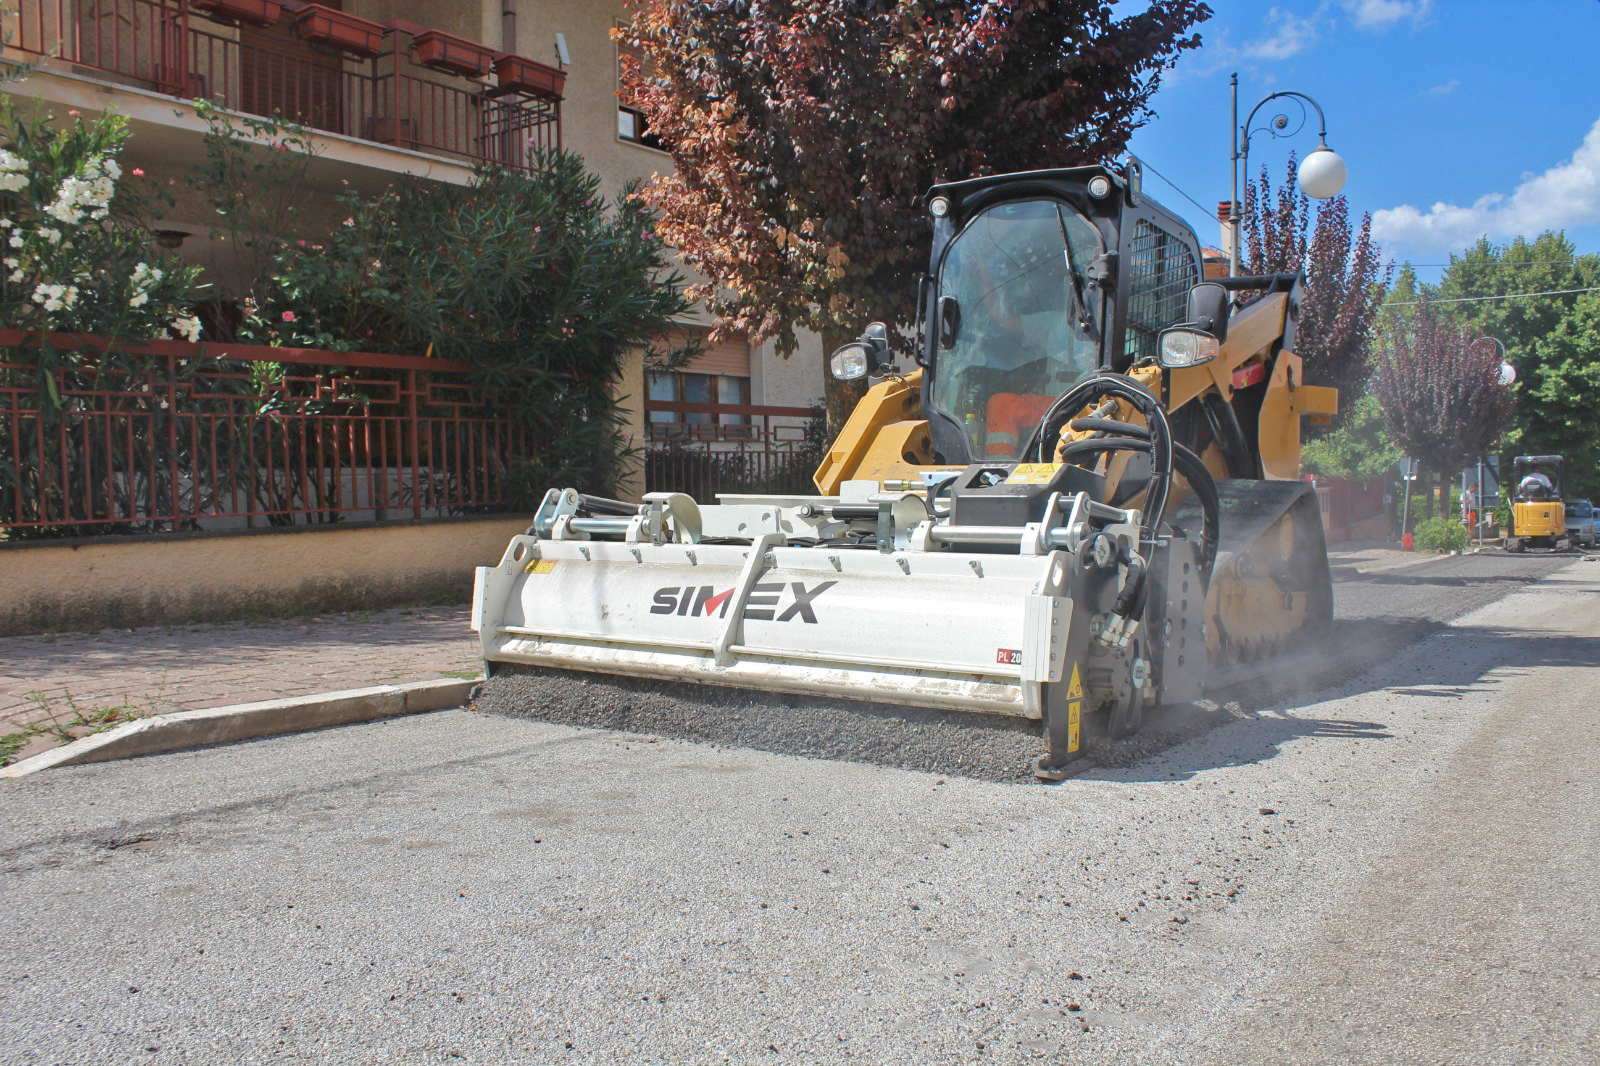 Simex PL 2000 Straßenfräse, Fräsarbeiten auf einer alten asphaltierten Straße zu Sanierungszwecken.